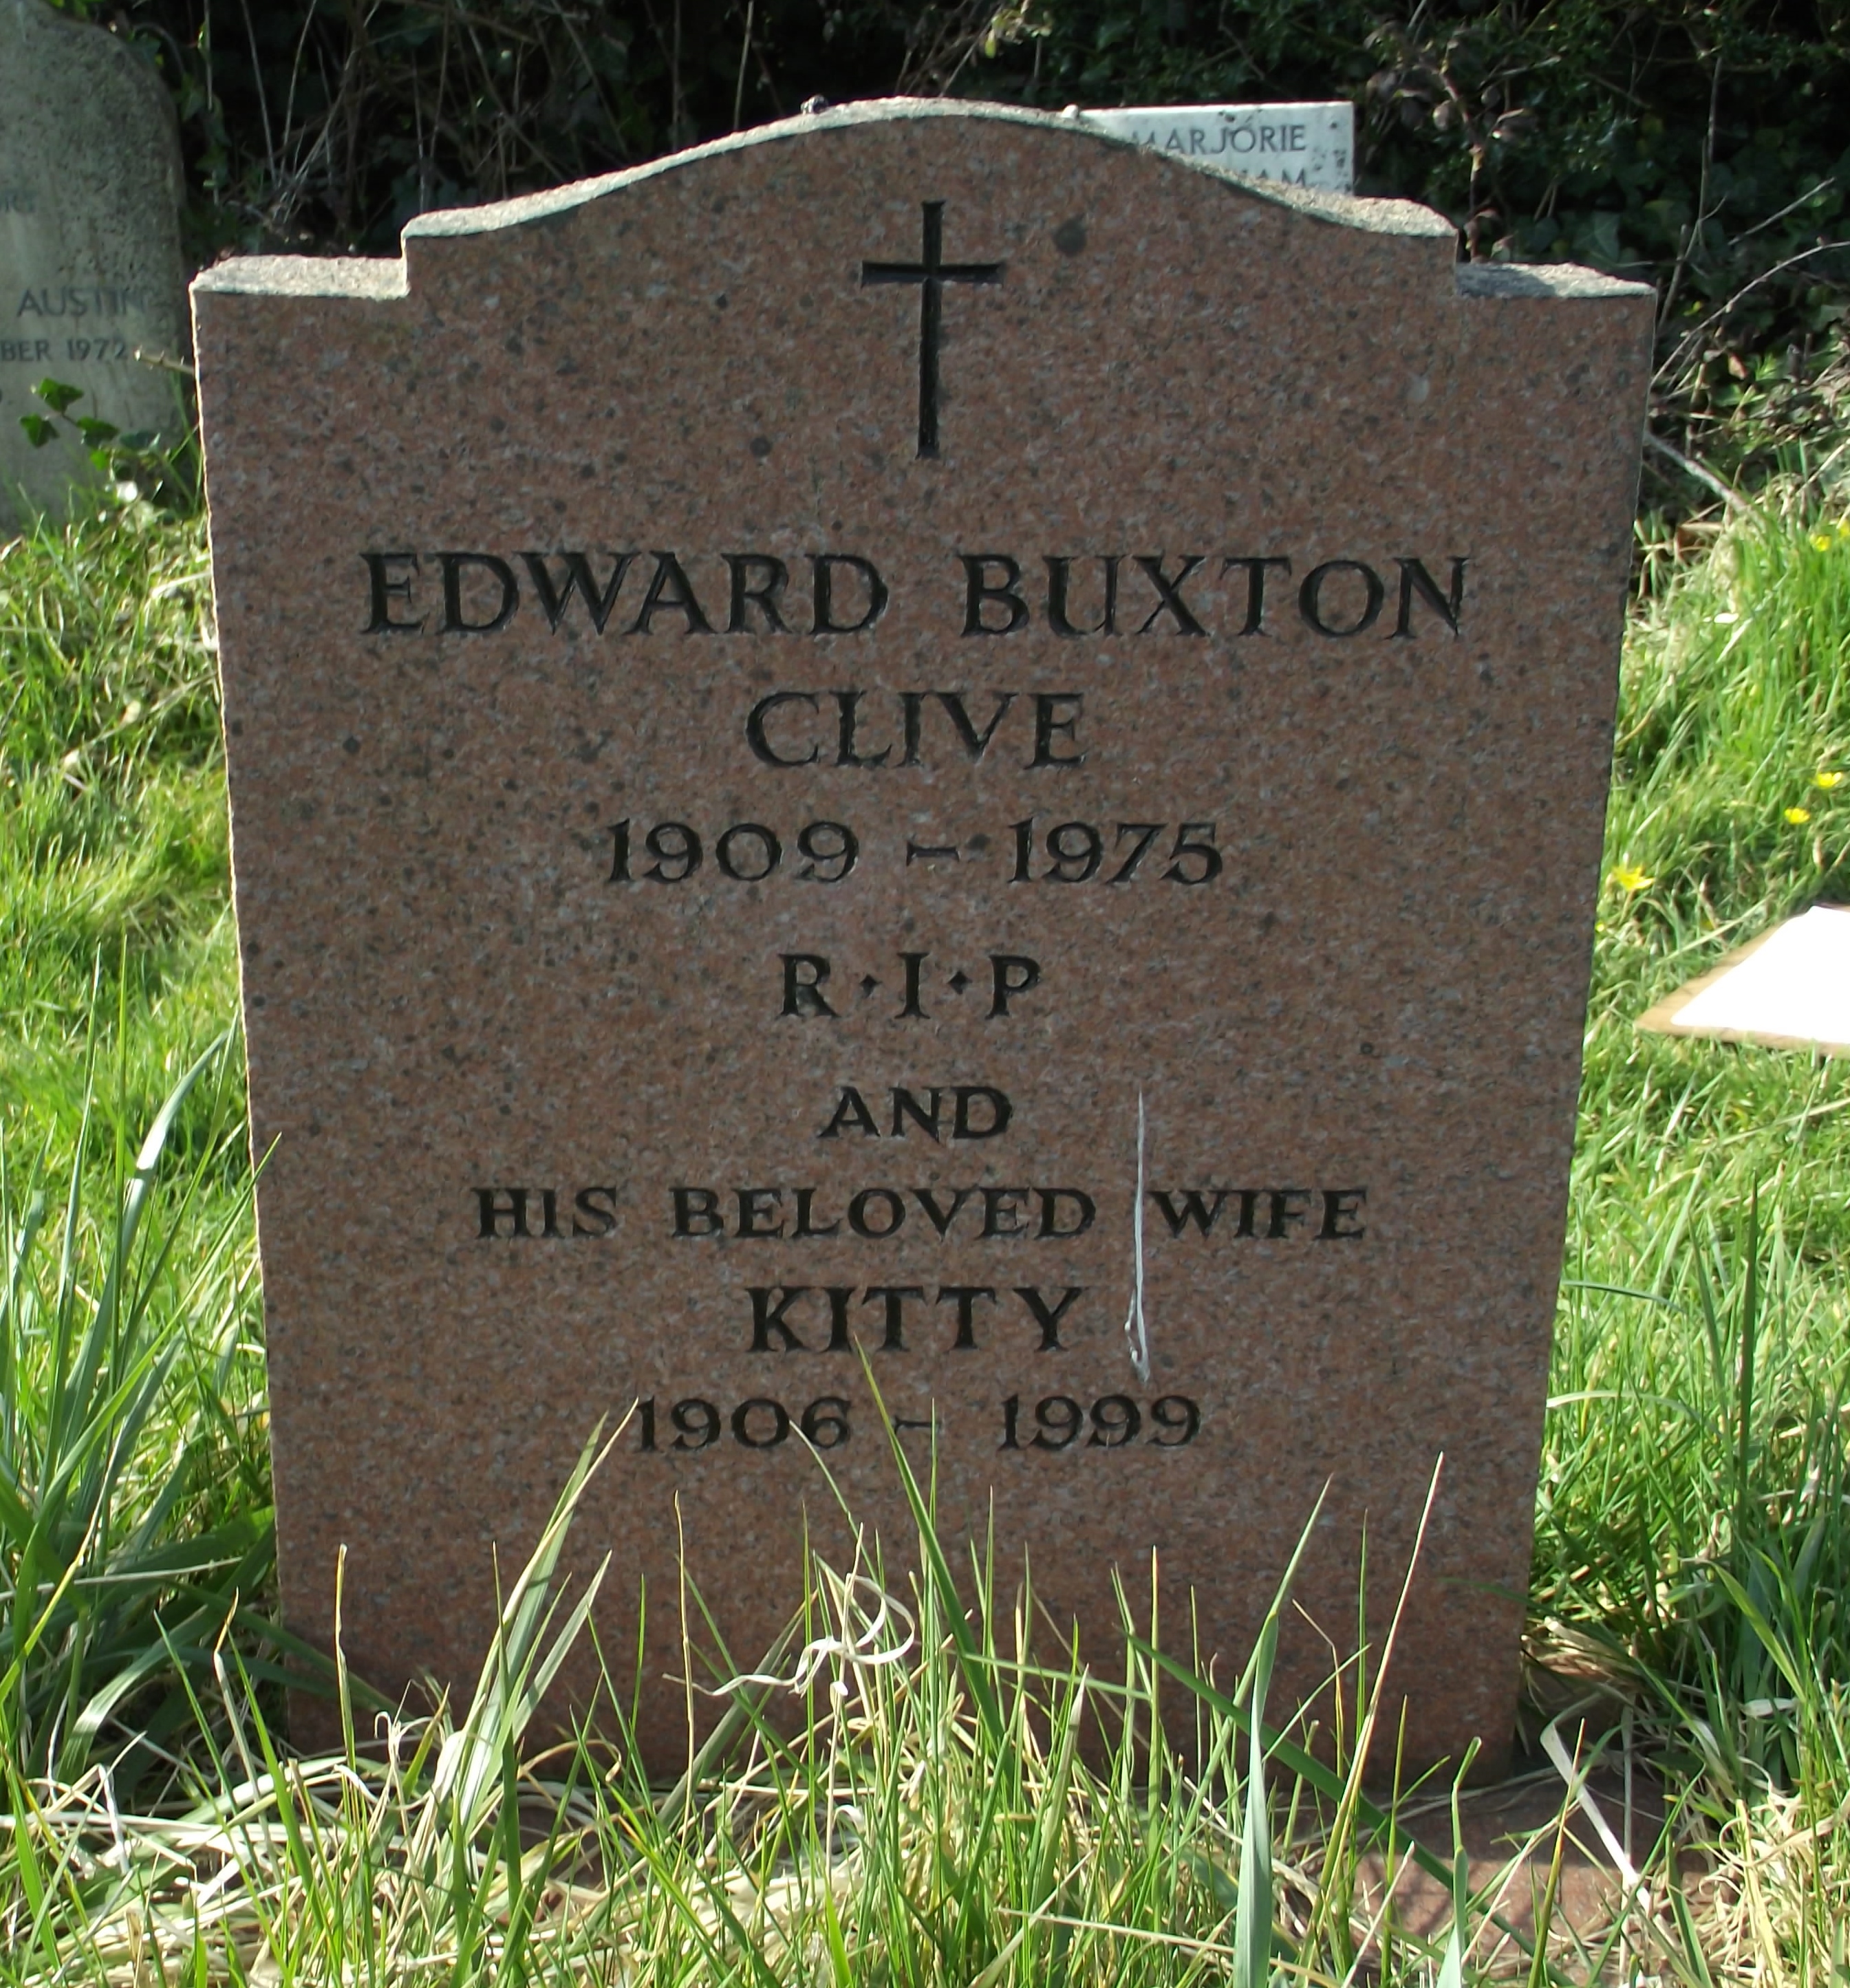 Edward Buxton Clive Memorial